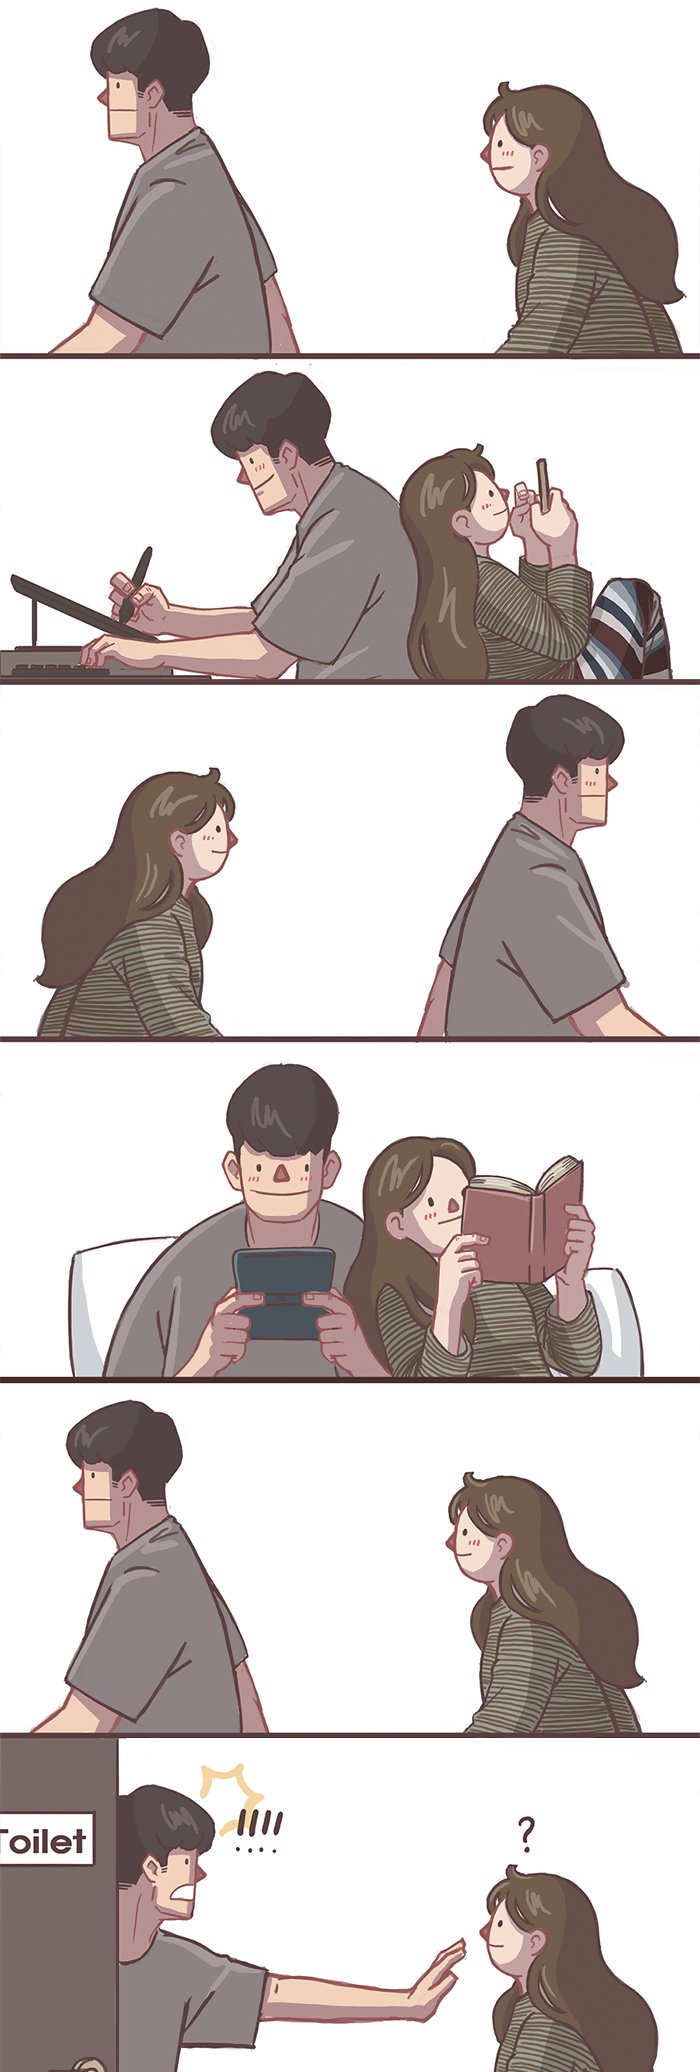 Girlfriend-Boyfriend-Relationship-Illustrations-Gyungstudio